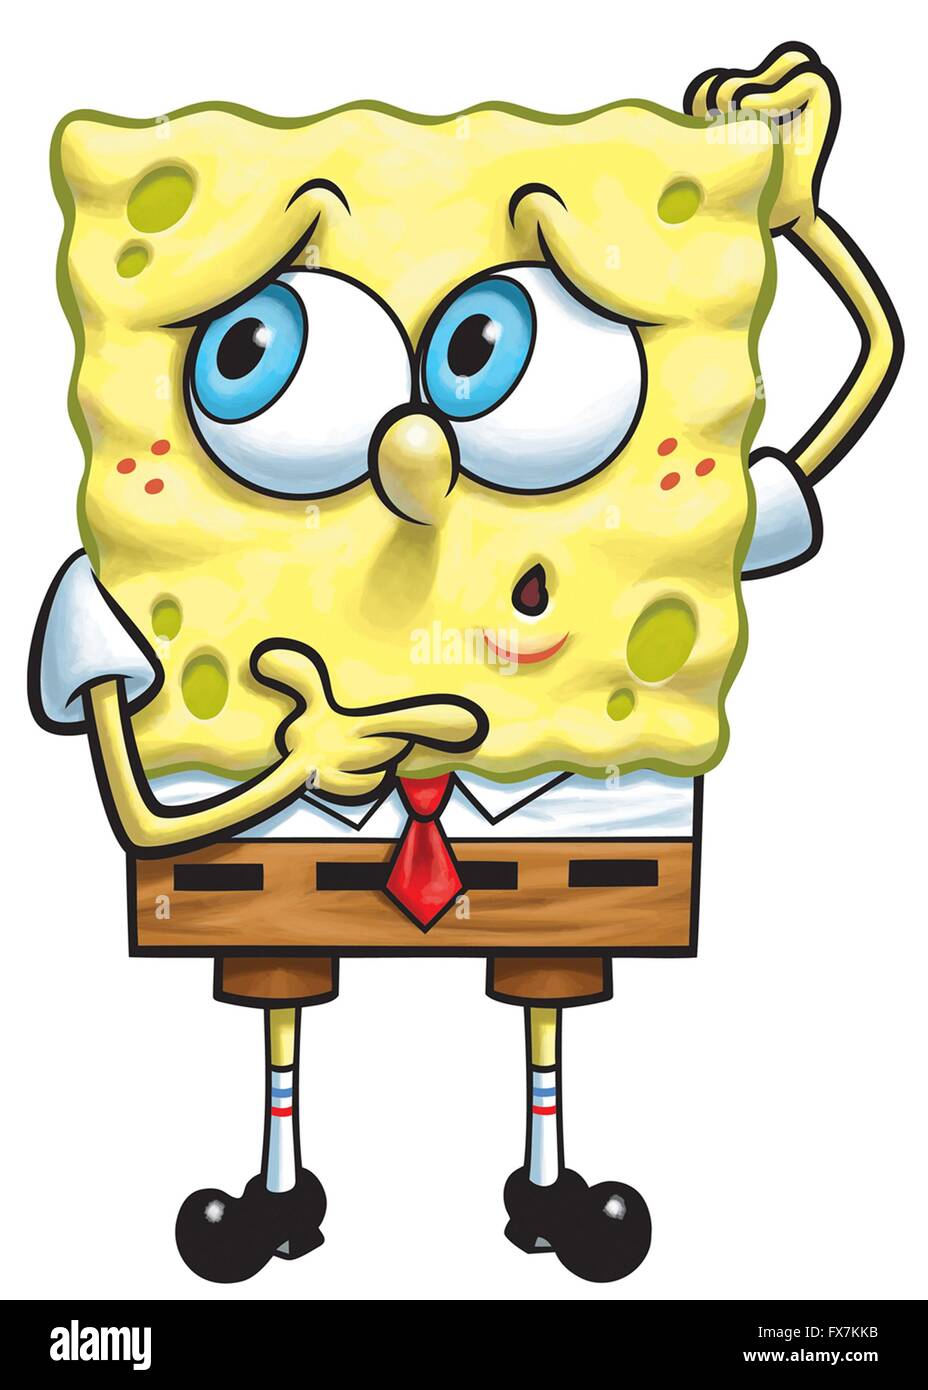 Spongebob schwammkopf -Fotos und -Bildmaterial in hoher Auflösung – Alamy